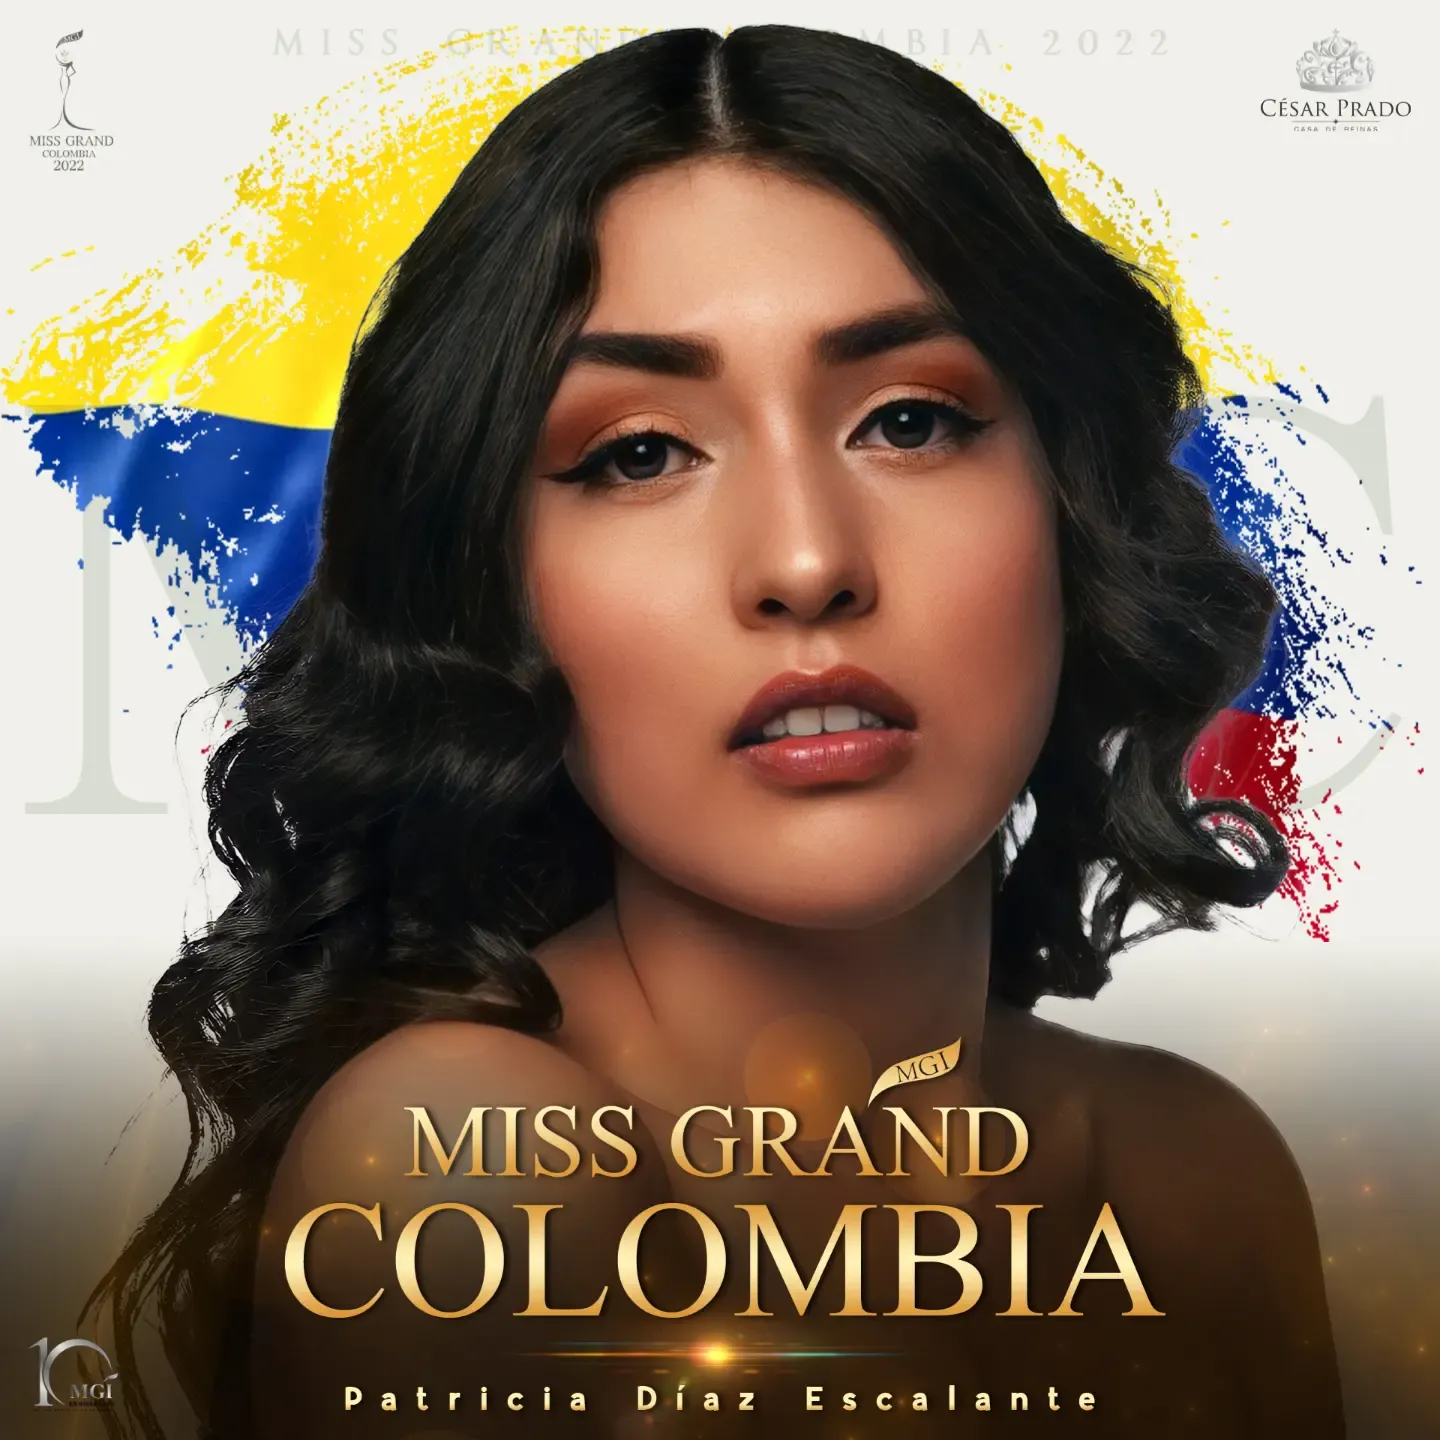 priscilla londono vence miss grand colombia 2022. - Página 2 XpCoMP